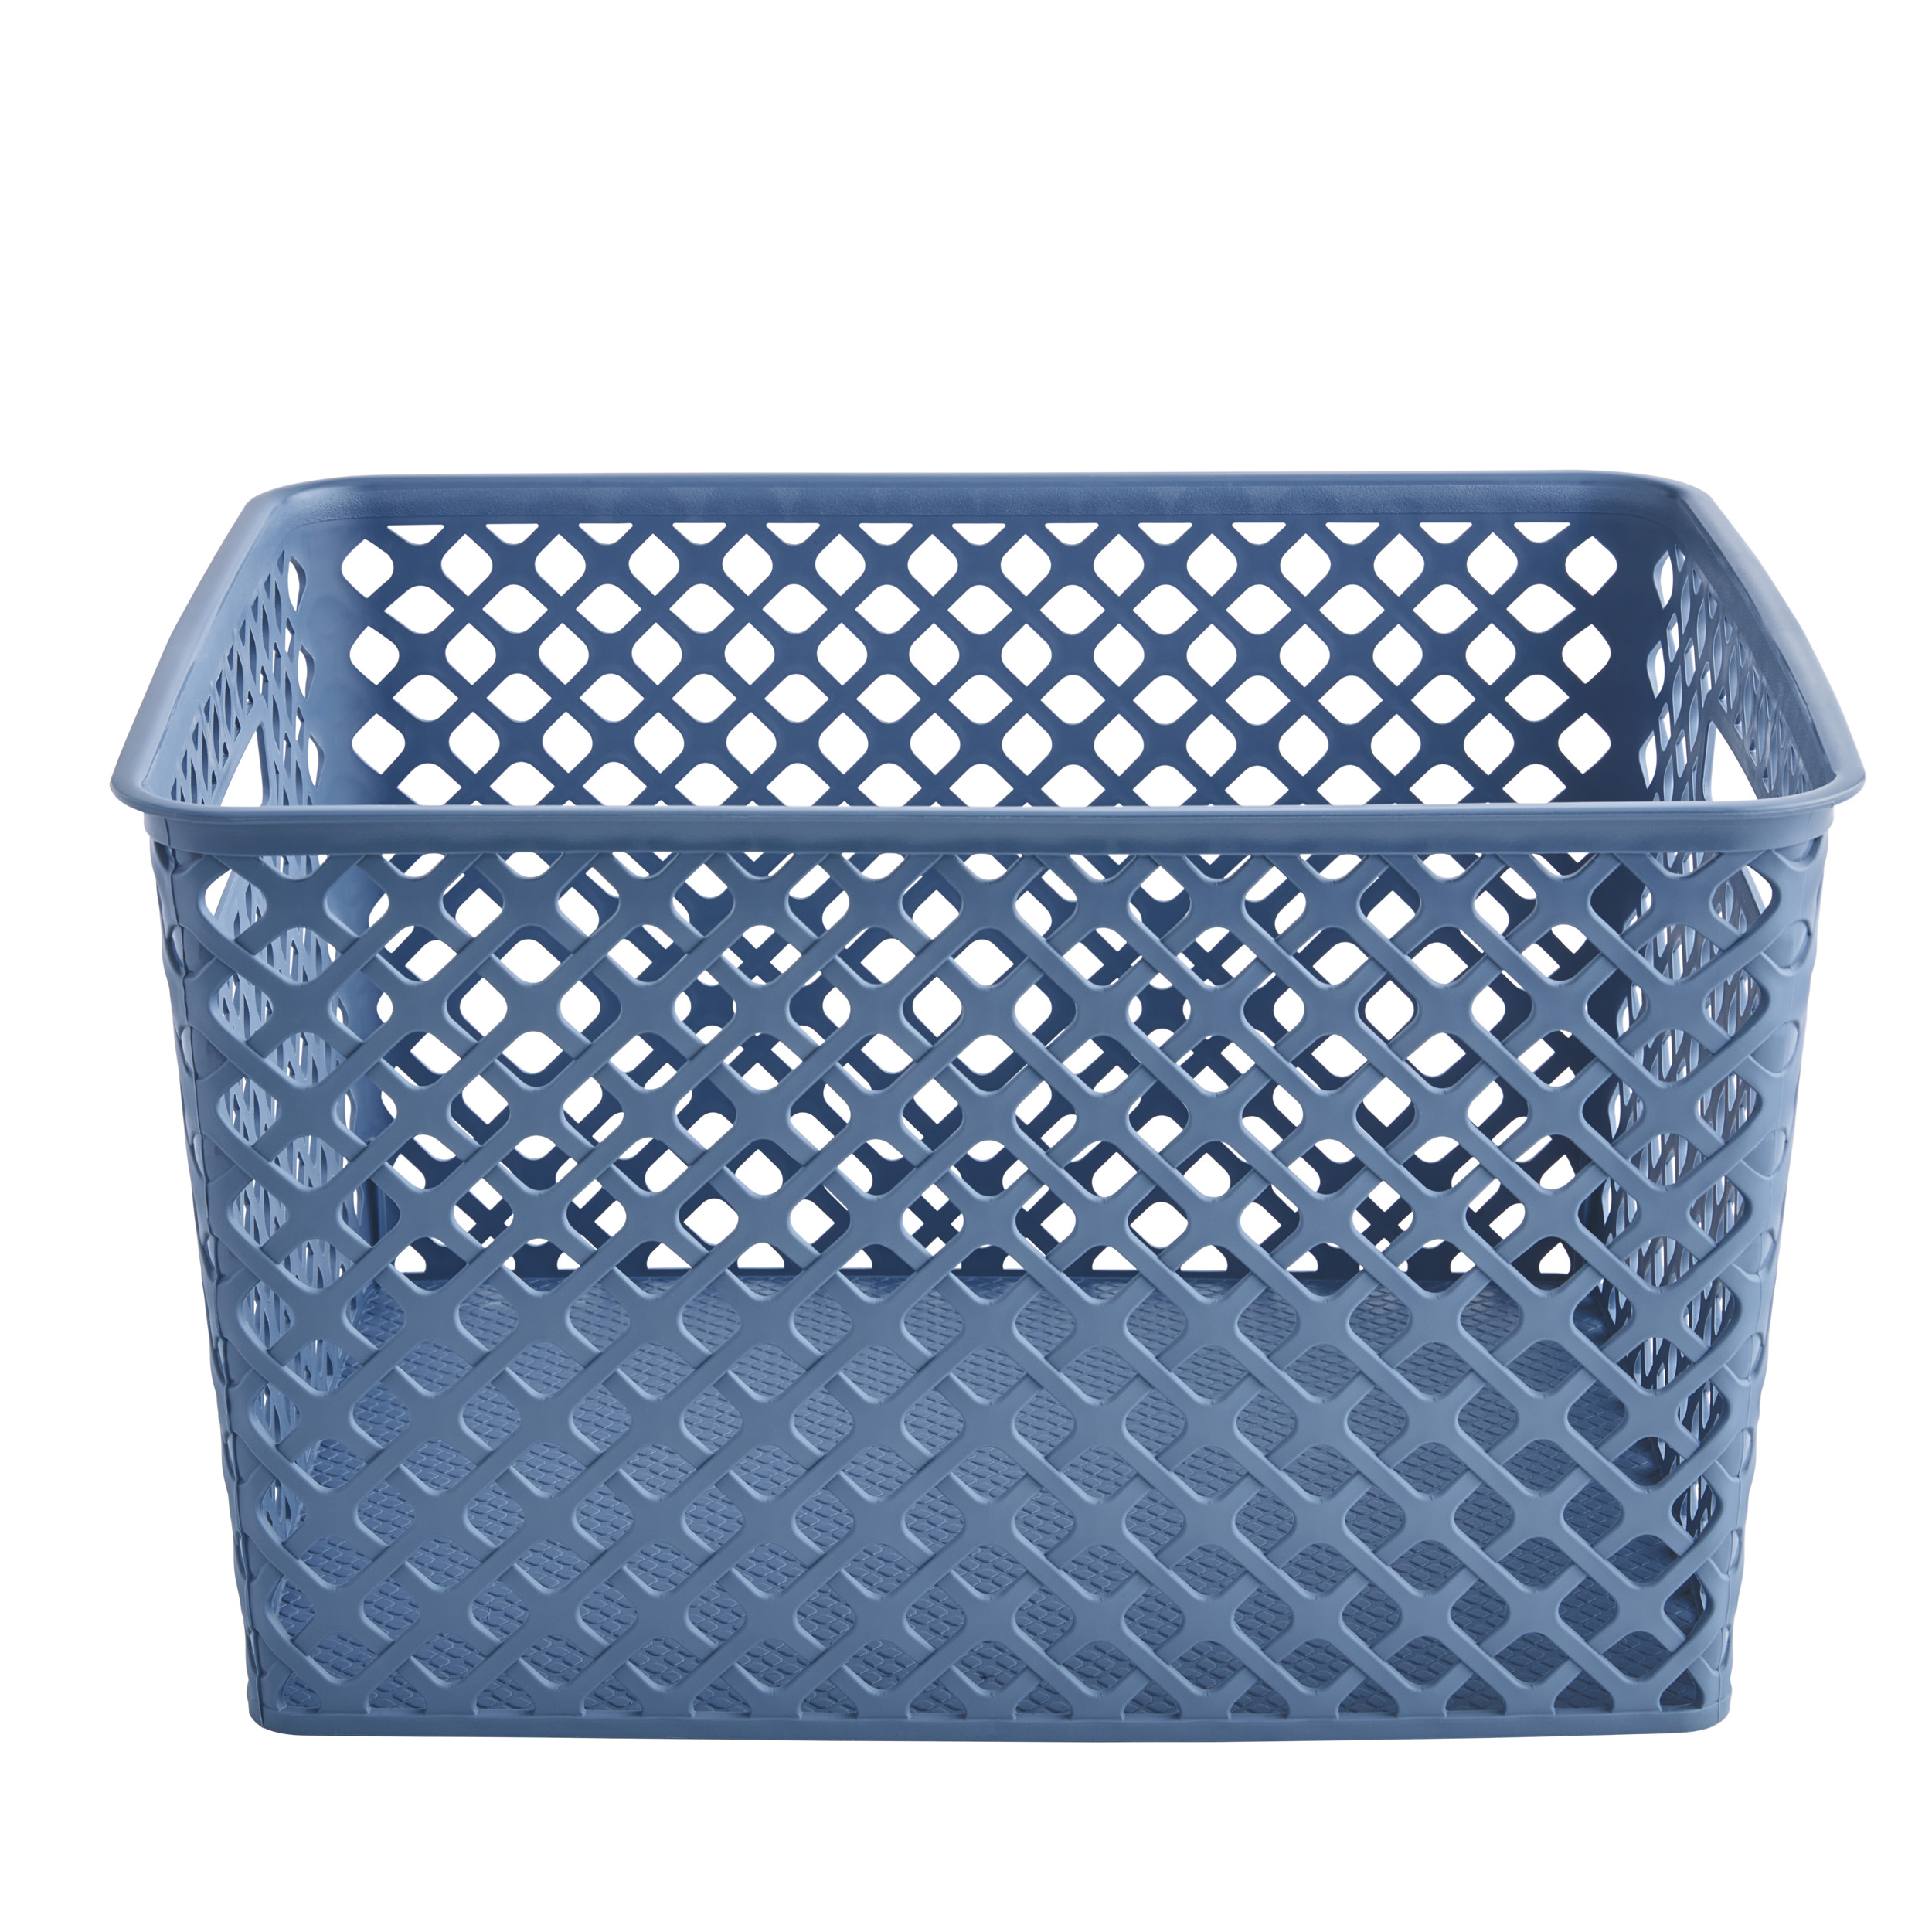 Mainstays Large Blue Decorative Storage Basket - image 1 of 5